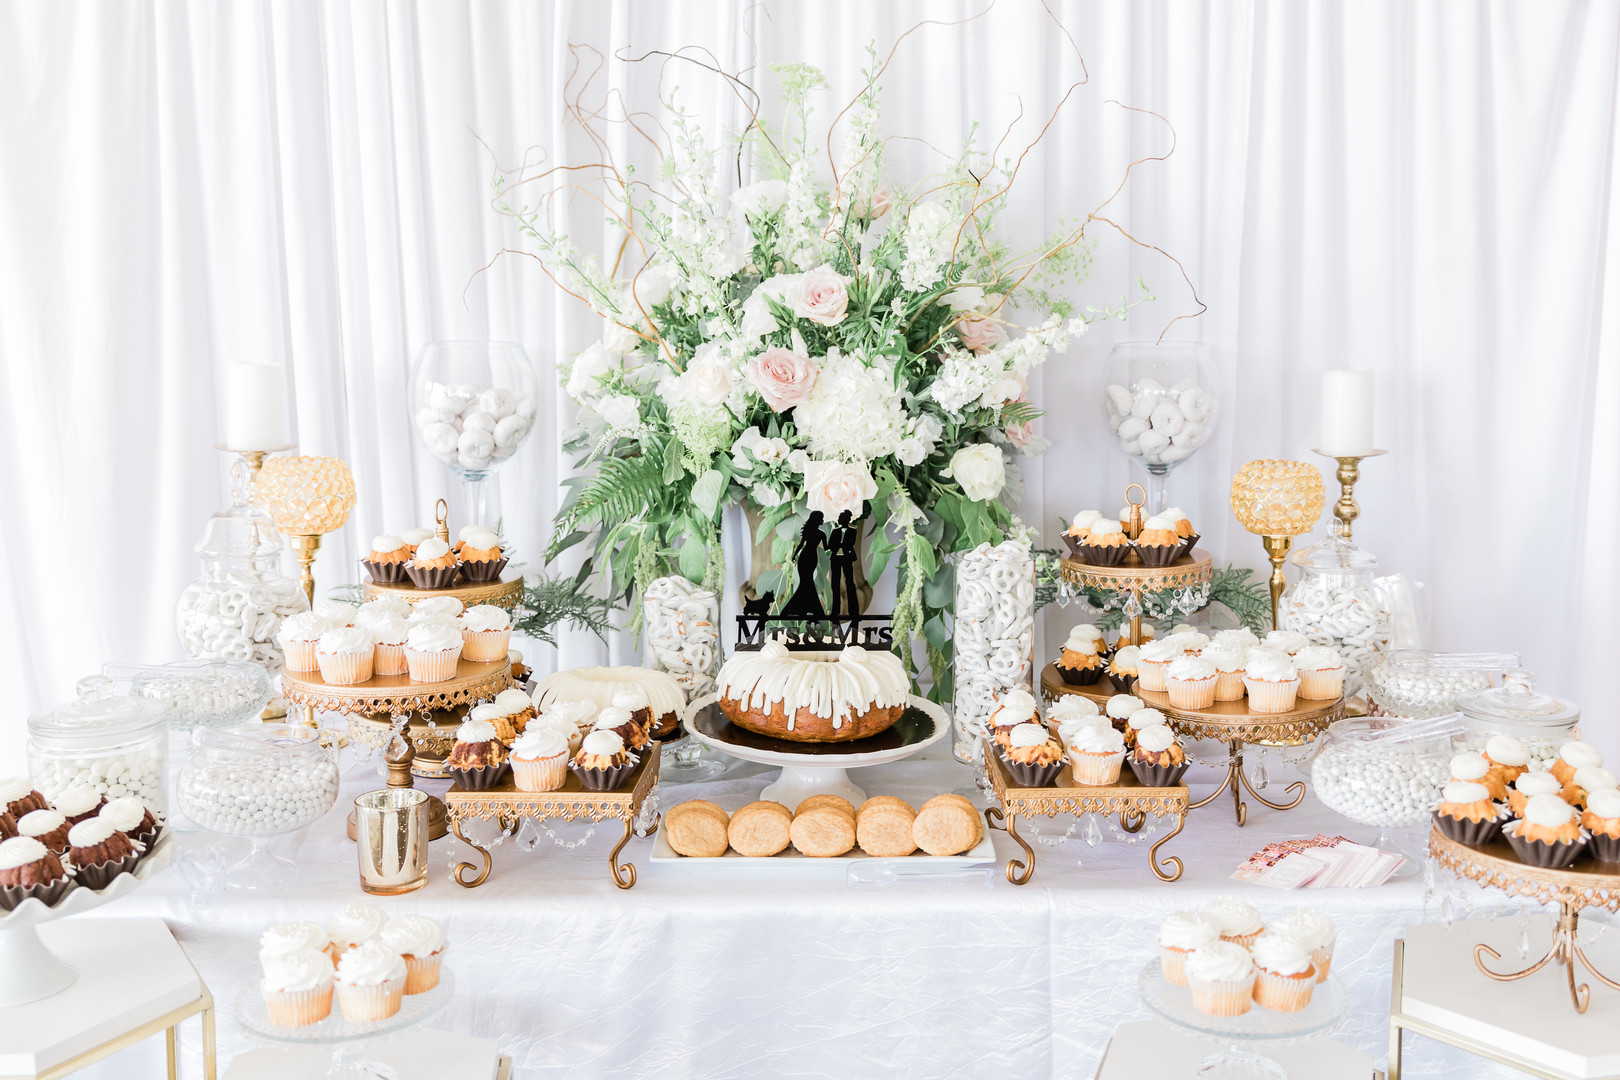 Spring country club wedding in Stockton, California two brides white tux white dress cake dessert